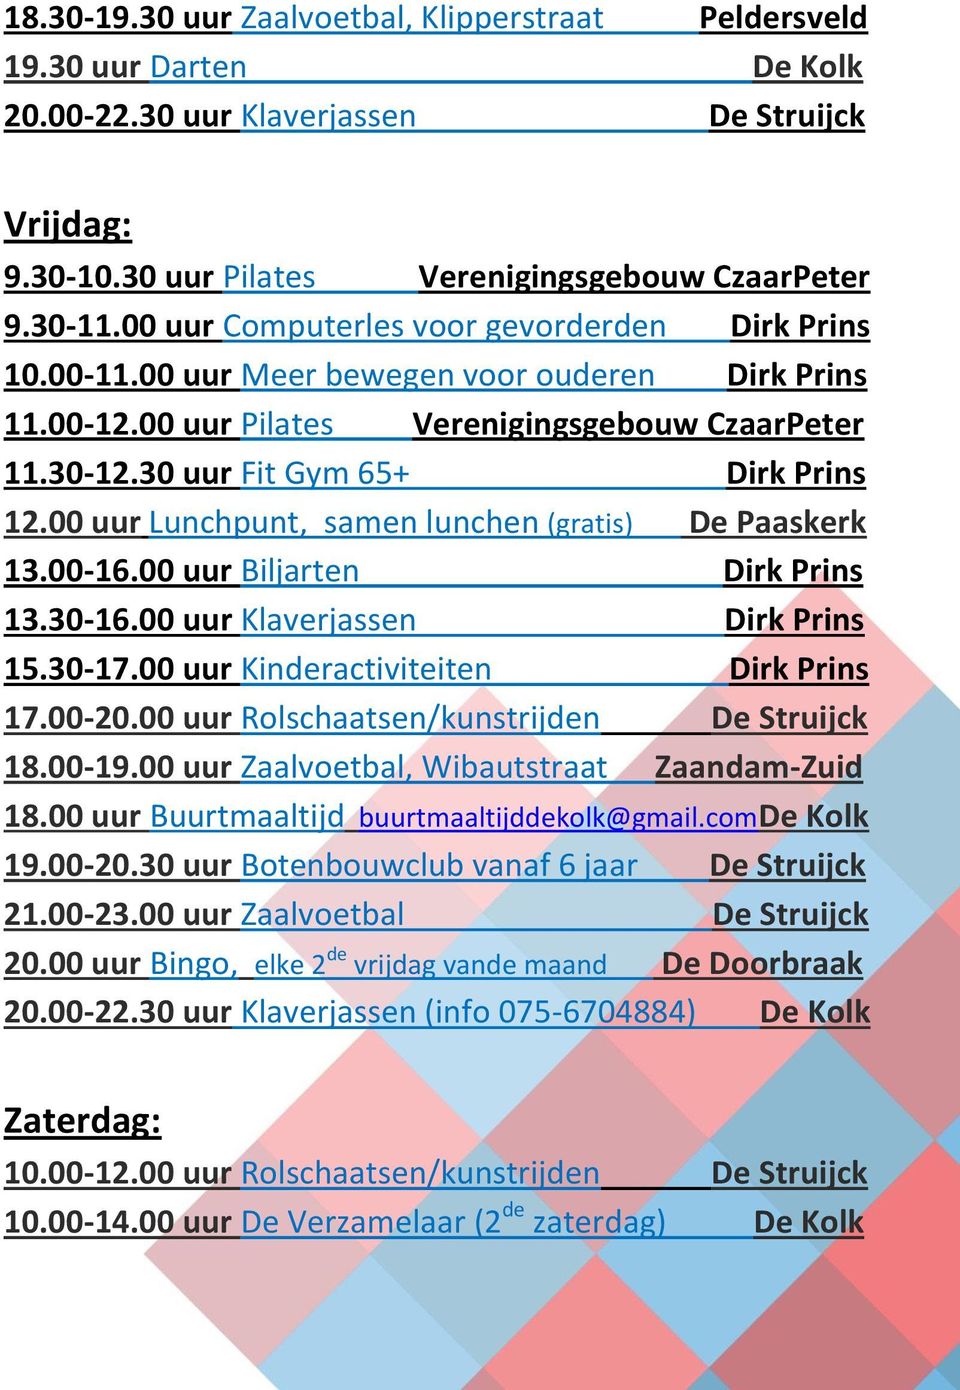 00 uur Lunchpunt, samen lunchen (gratis) De Paaskerk 13.00-16.00 uur Biljarten Dirk Prins 13.30-16.00 uur Klaverjassen Dirk Prins 15.30-17.00 uur Kinderactiviteiten Dirk Prins 17.00-20.